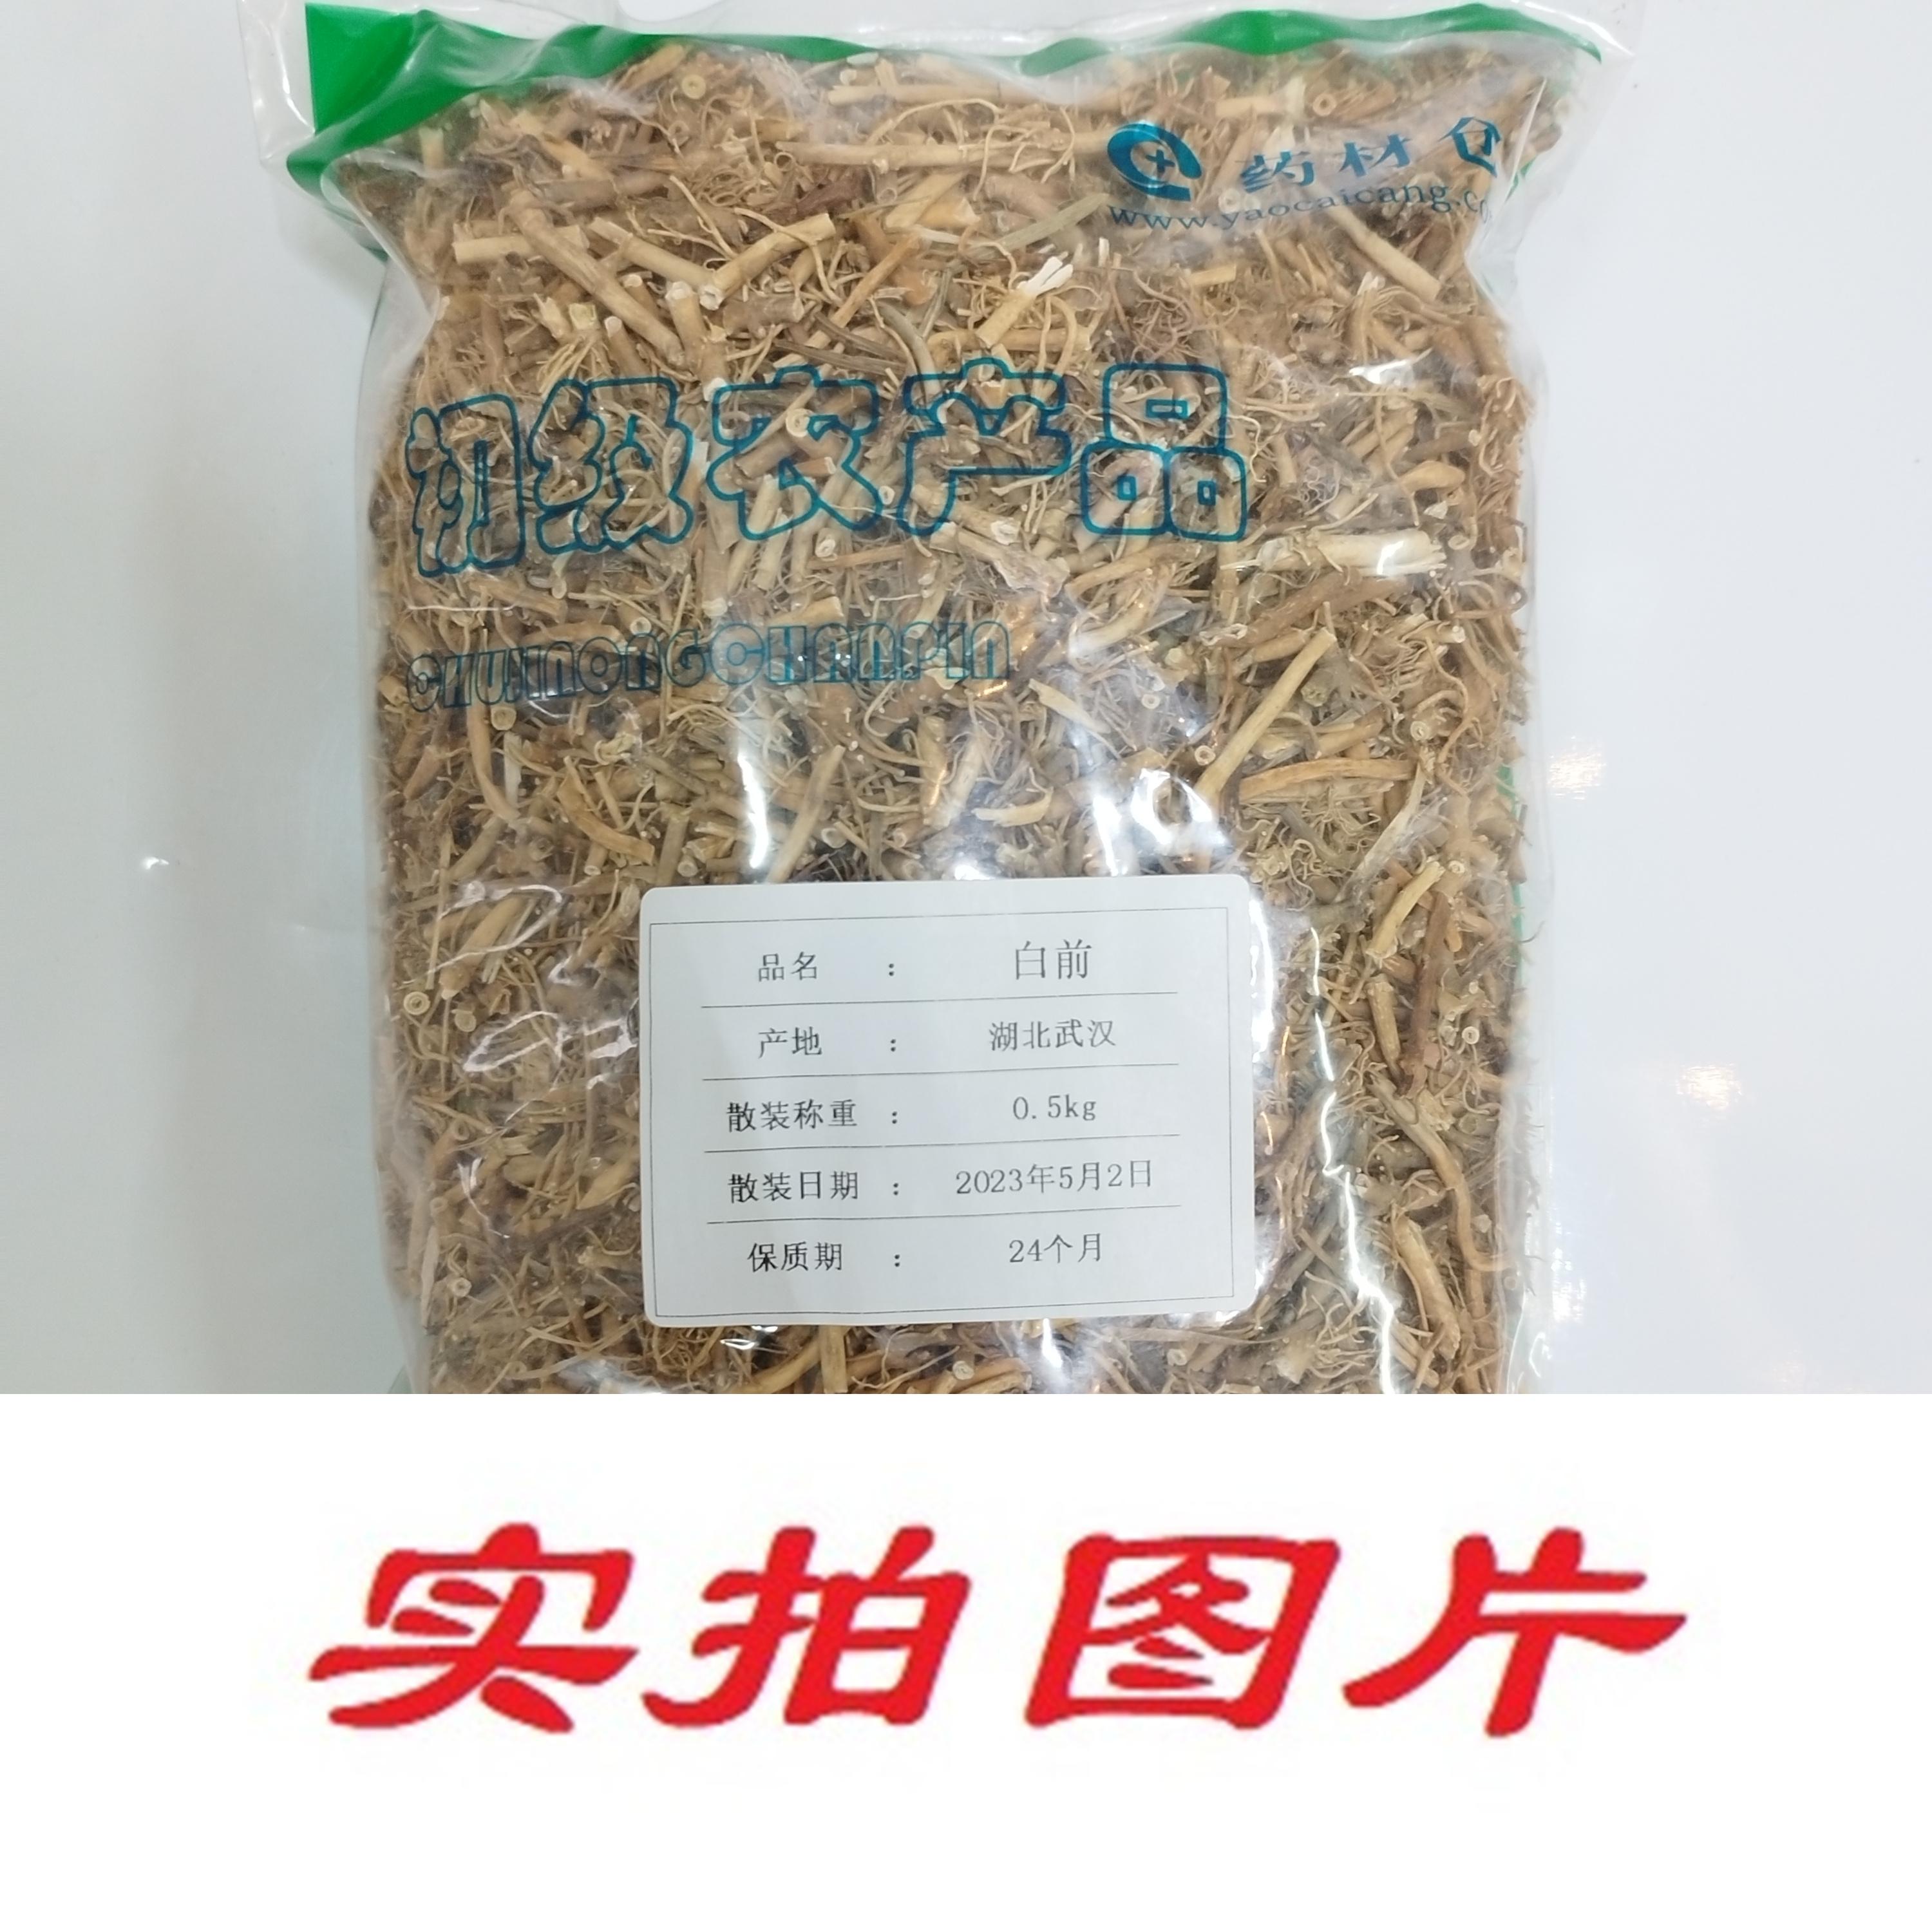 【】白前0.5kg-农副产品